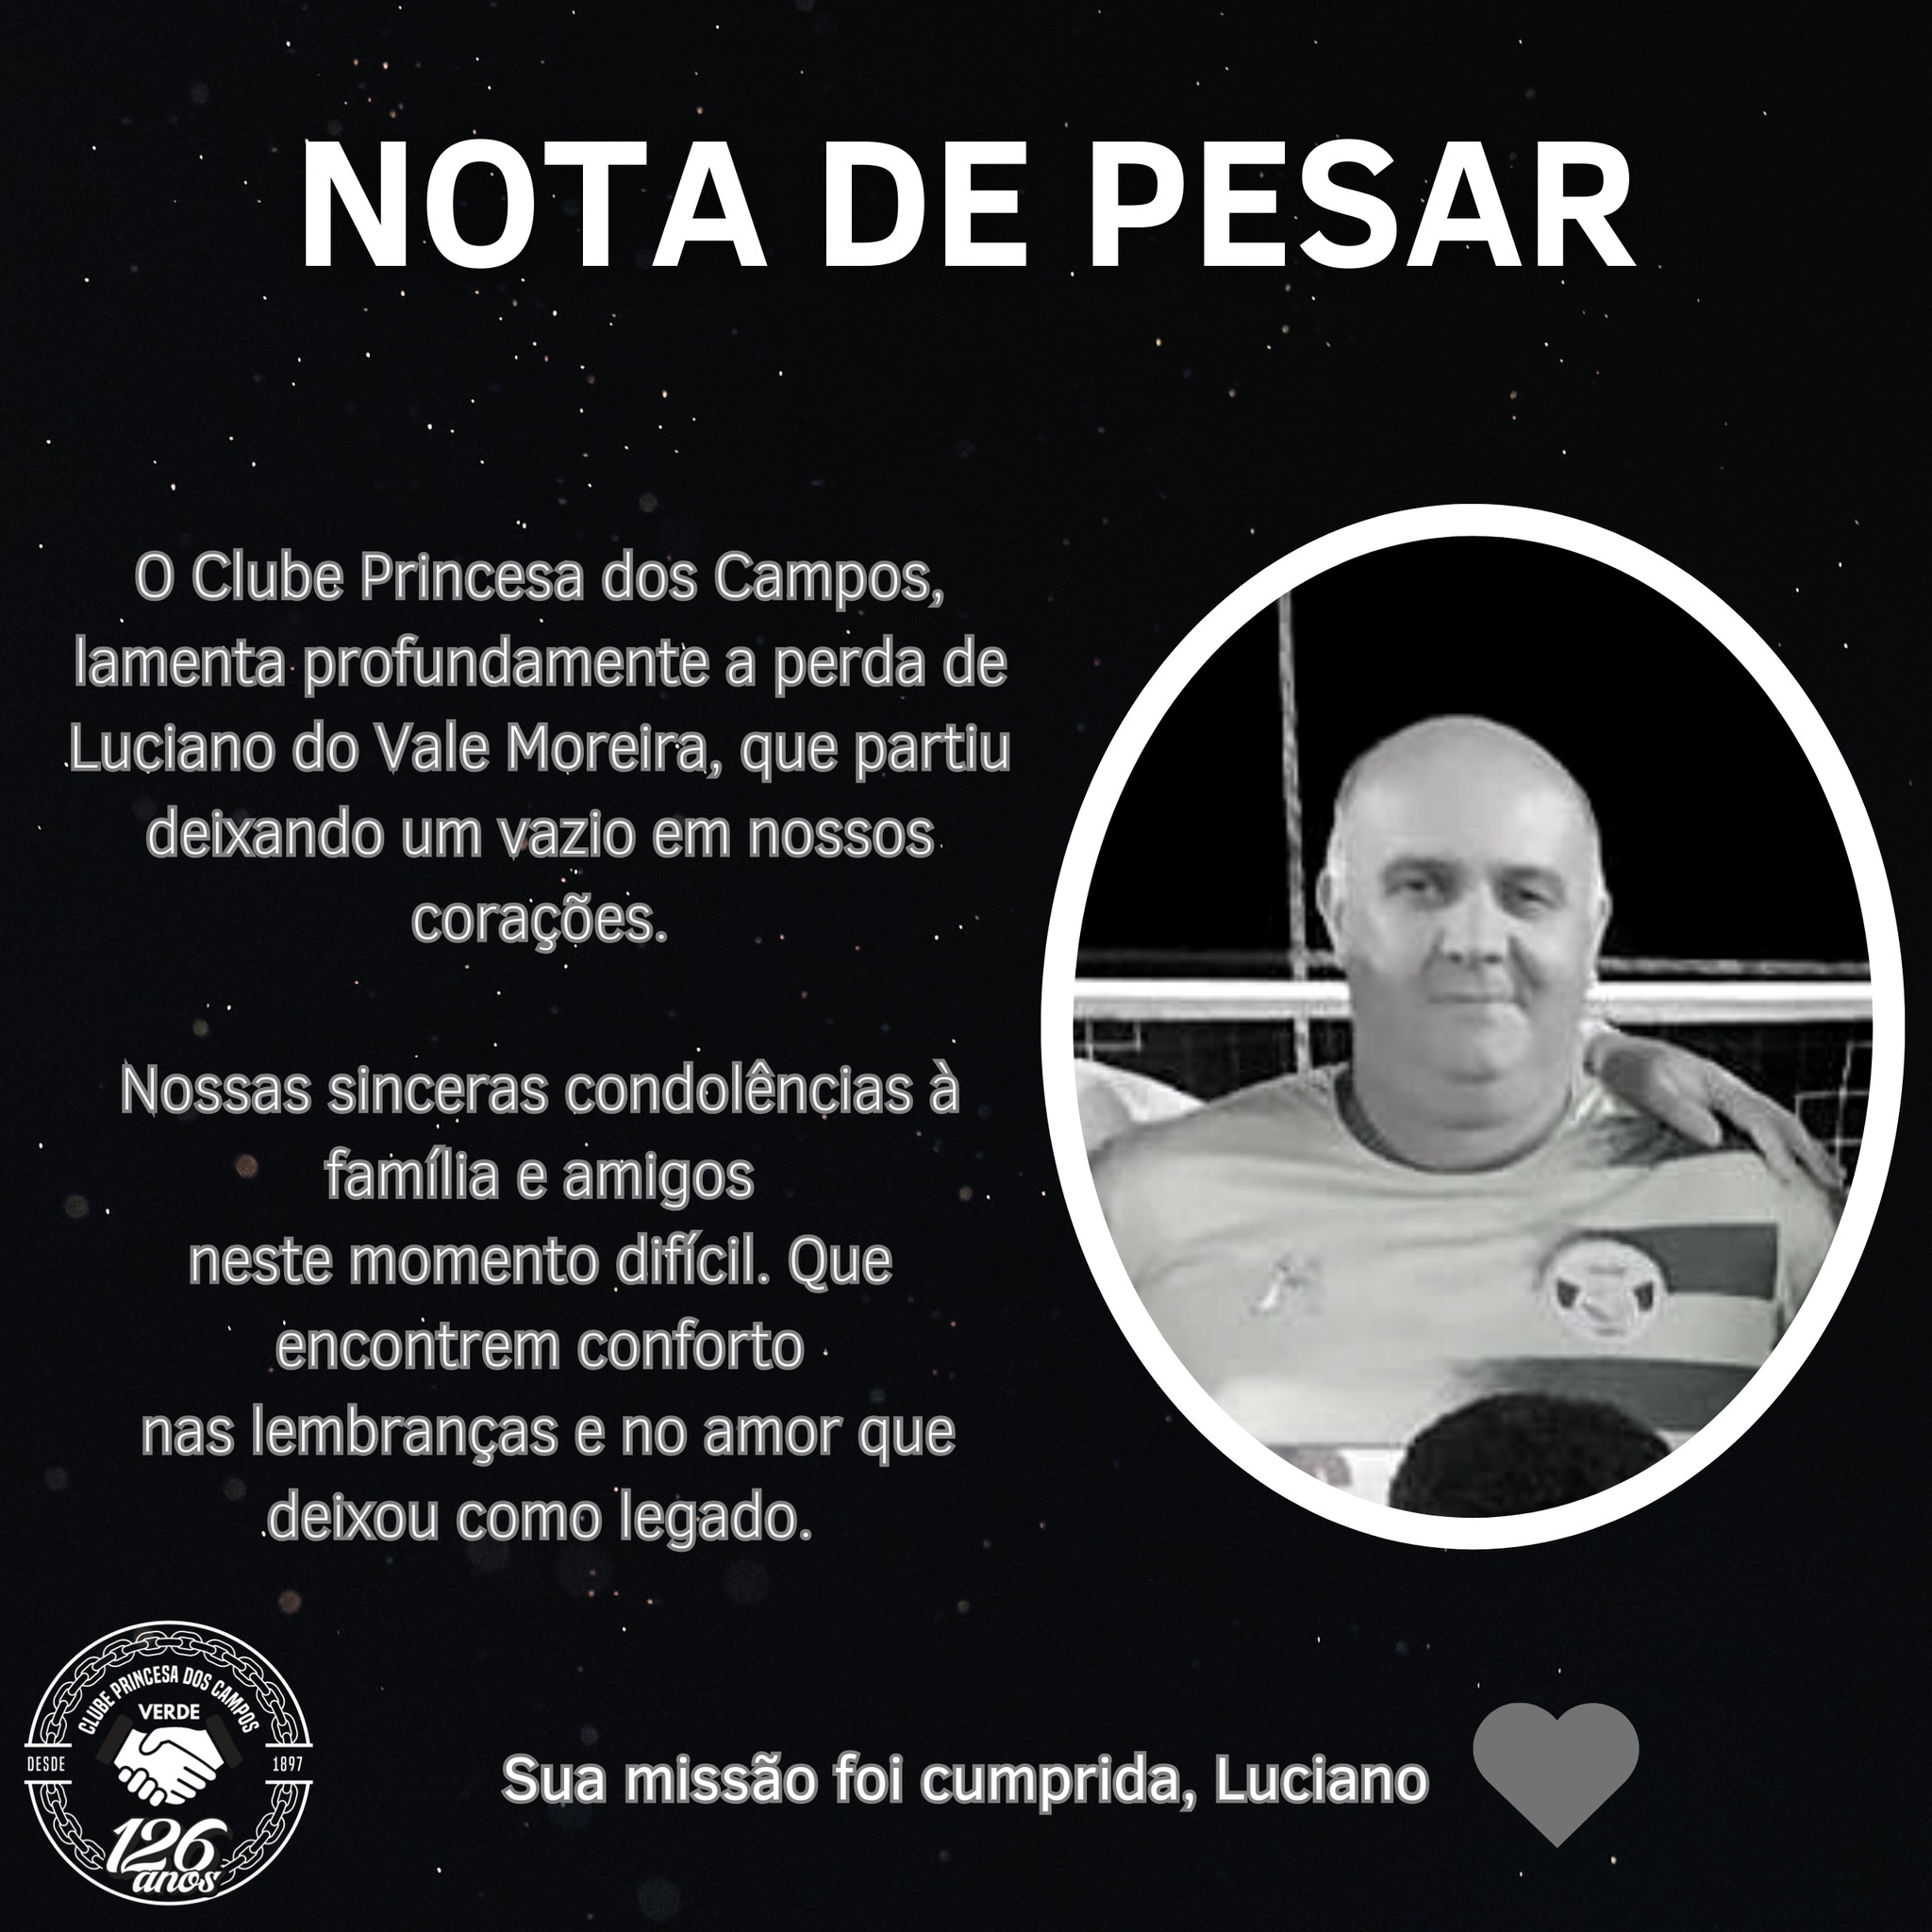 Nota de Pesar publicada pelo Clube Princesa dos Campos pela morte de Luciano do Vale Moreira.